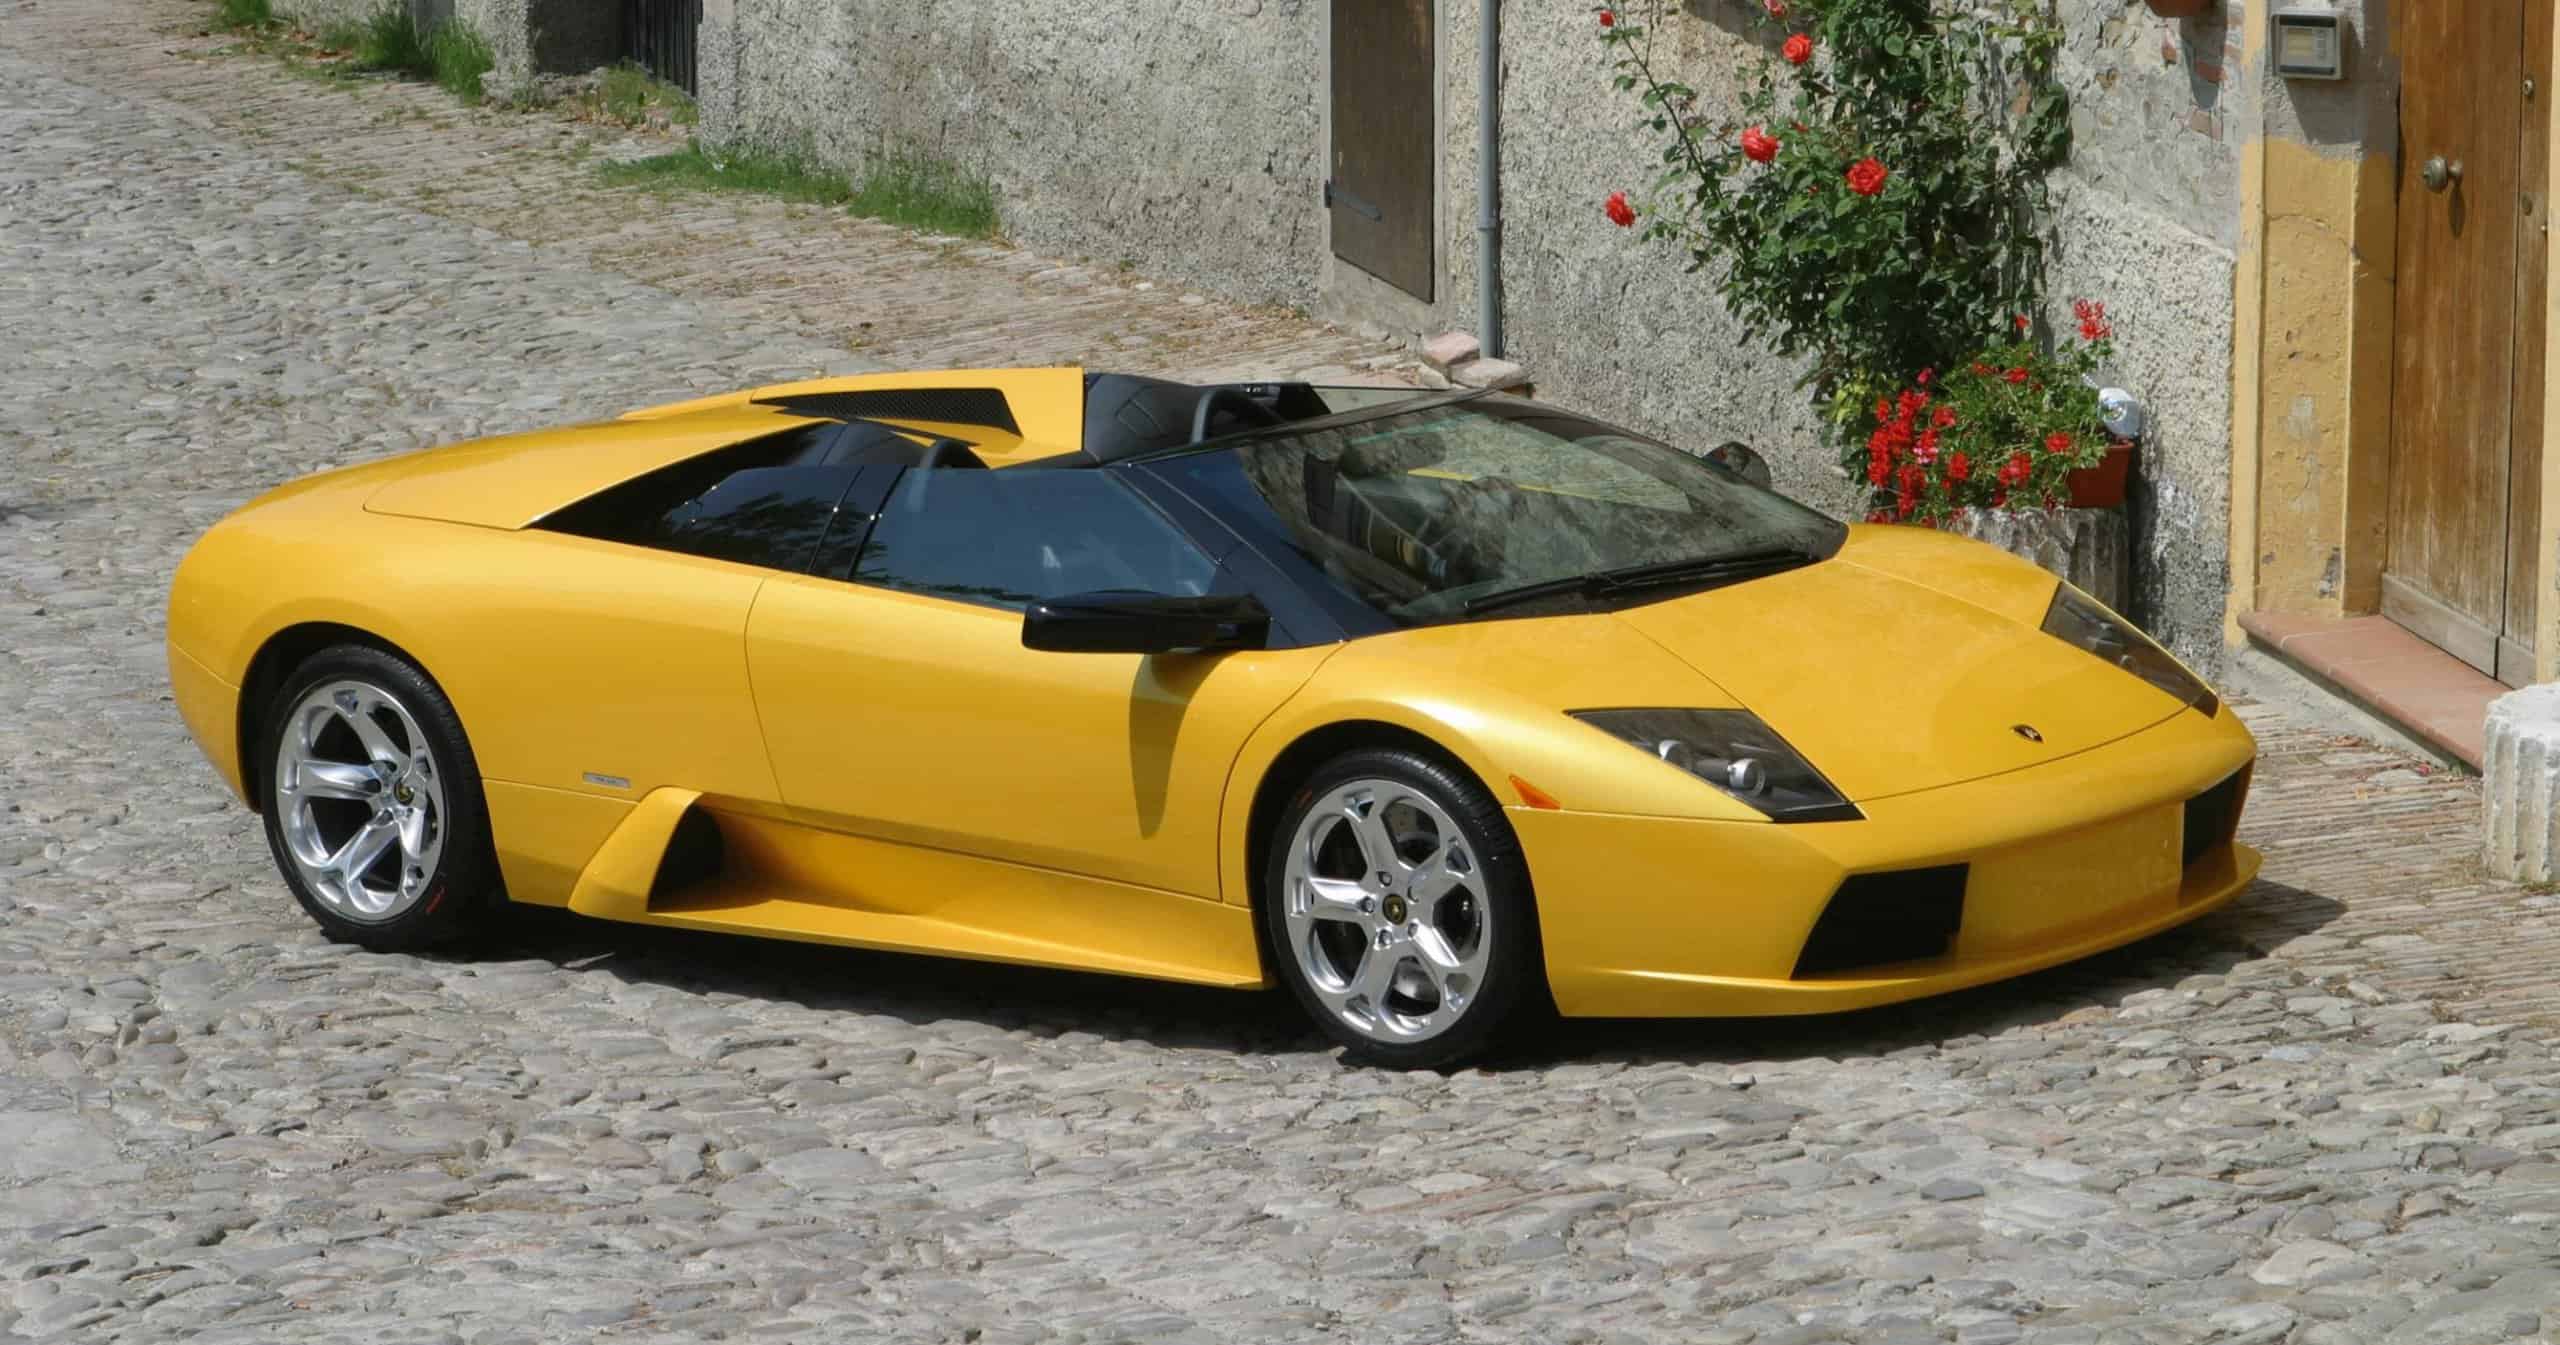 Lamborghini V12 engine